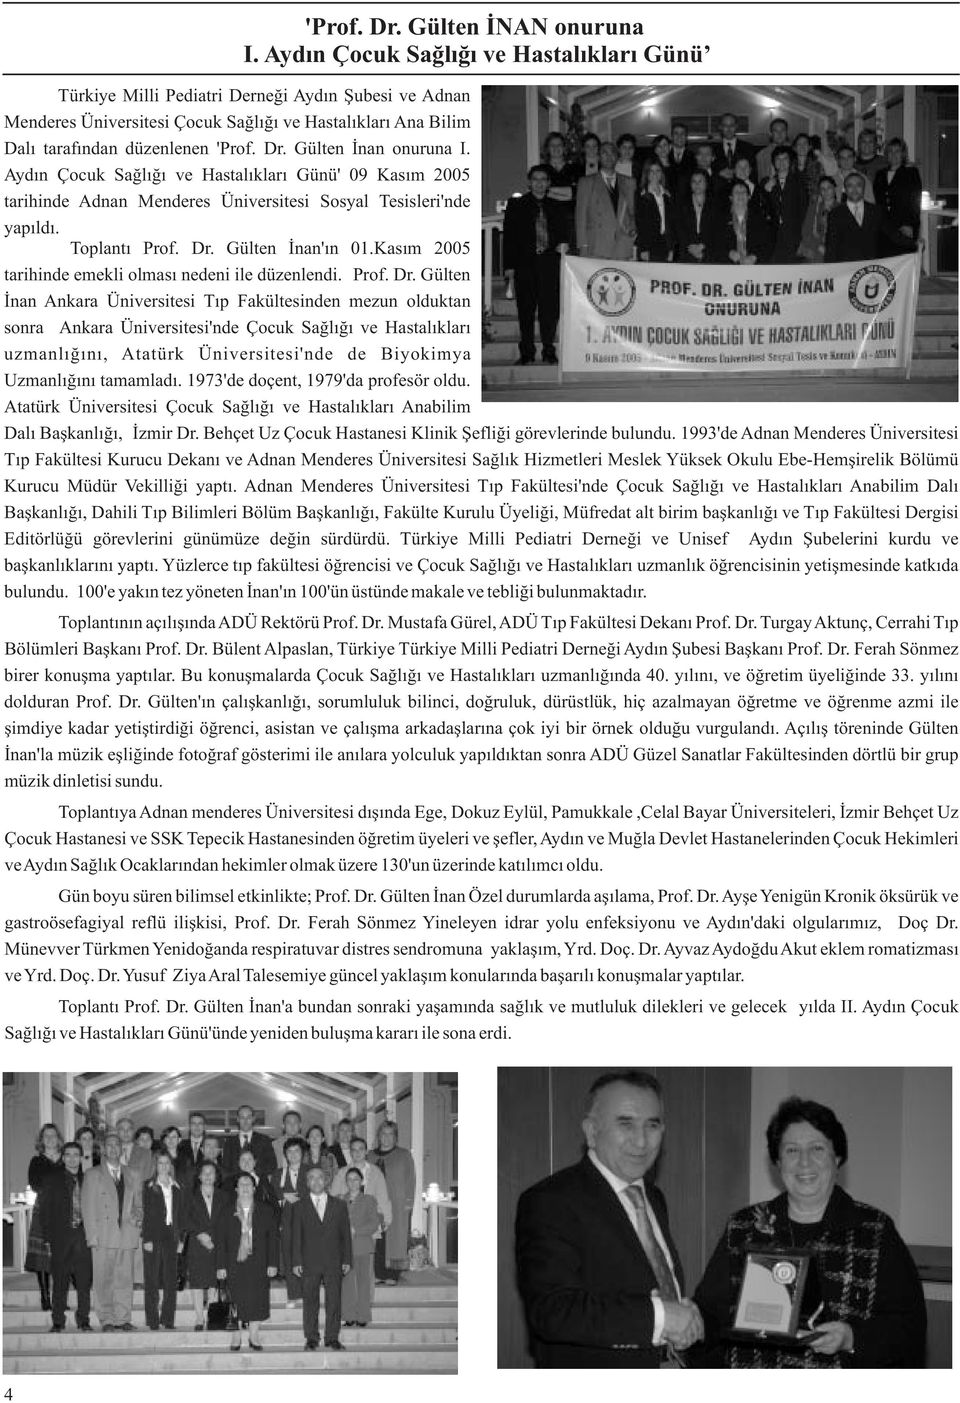 Gülten İnan onuruna I. Aydın Çocuk Sağlığı ve Hastalıkları Günü' 09 Kasım 2005 tarihinde Adnan Menderes Üniversitesi Sosyal Tesisleri'nde yapıldı. Toplantı Prof. Dr. Gülten İnan'ın 01.